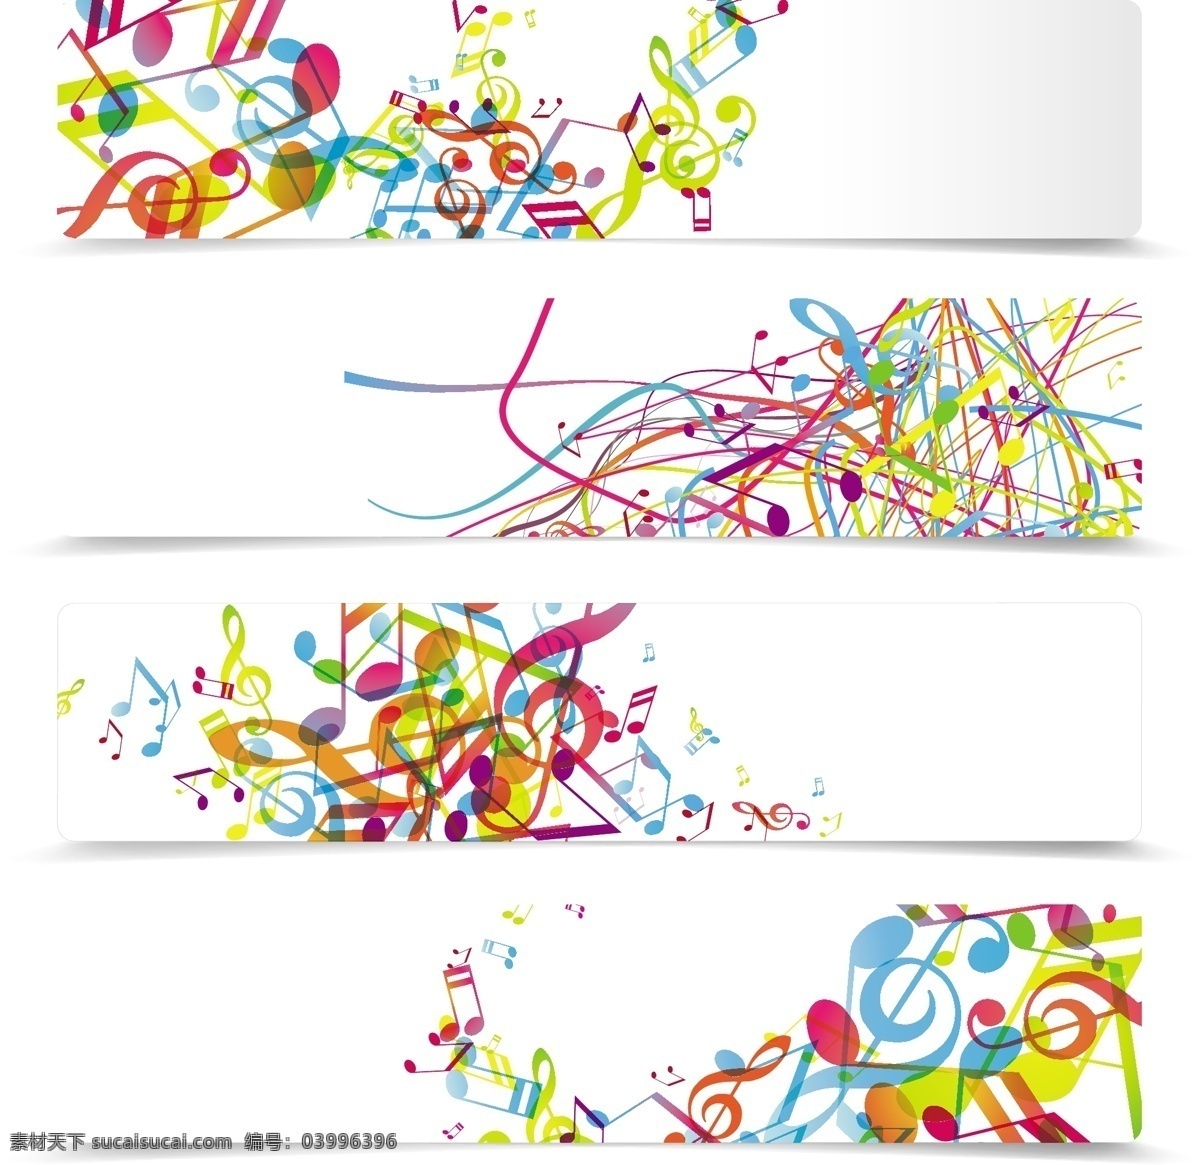 多彩 音符 主题 横幅 矢量 适用 音乐 模板 格式 banner 矢量图 花纹花边